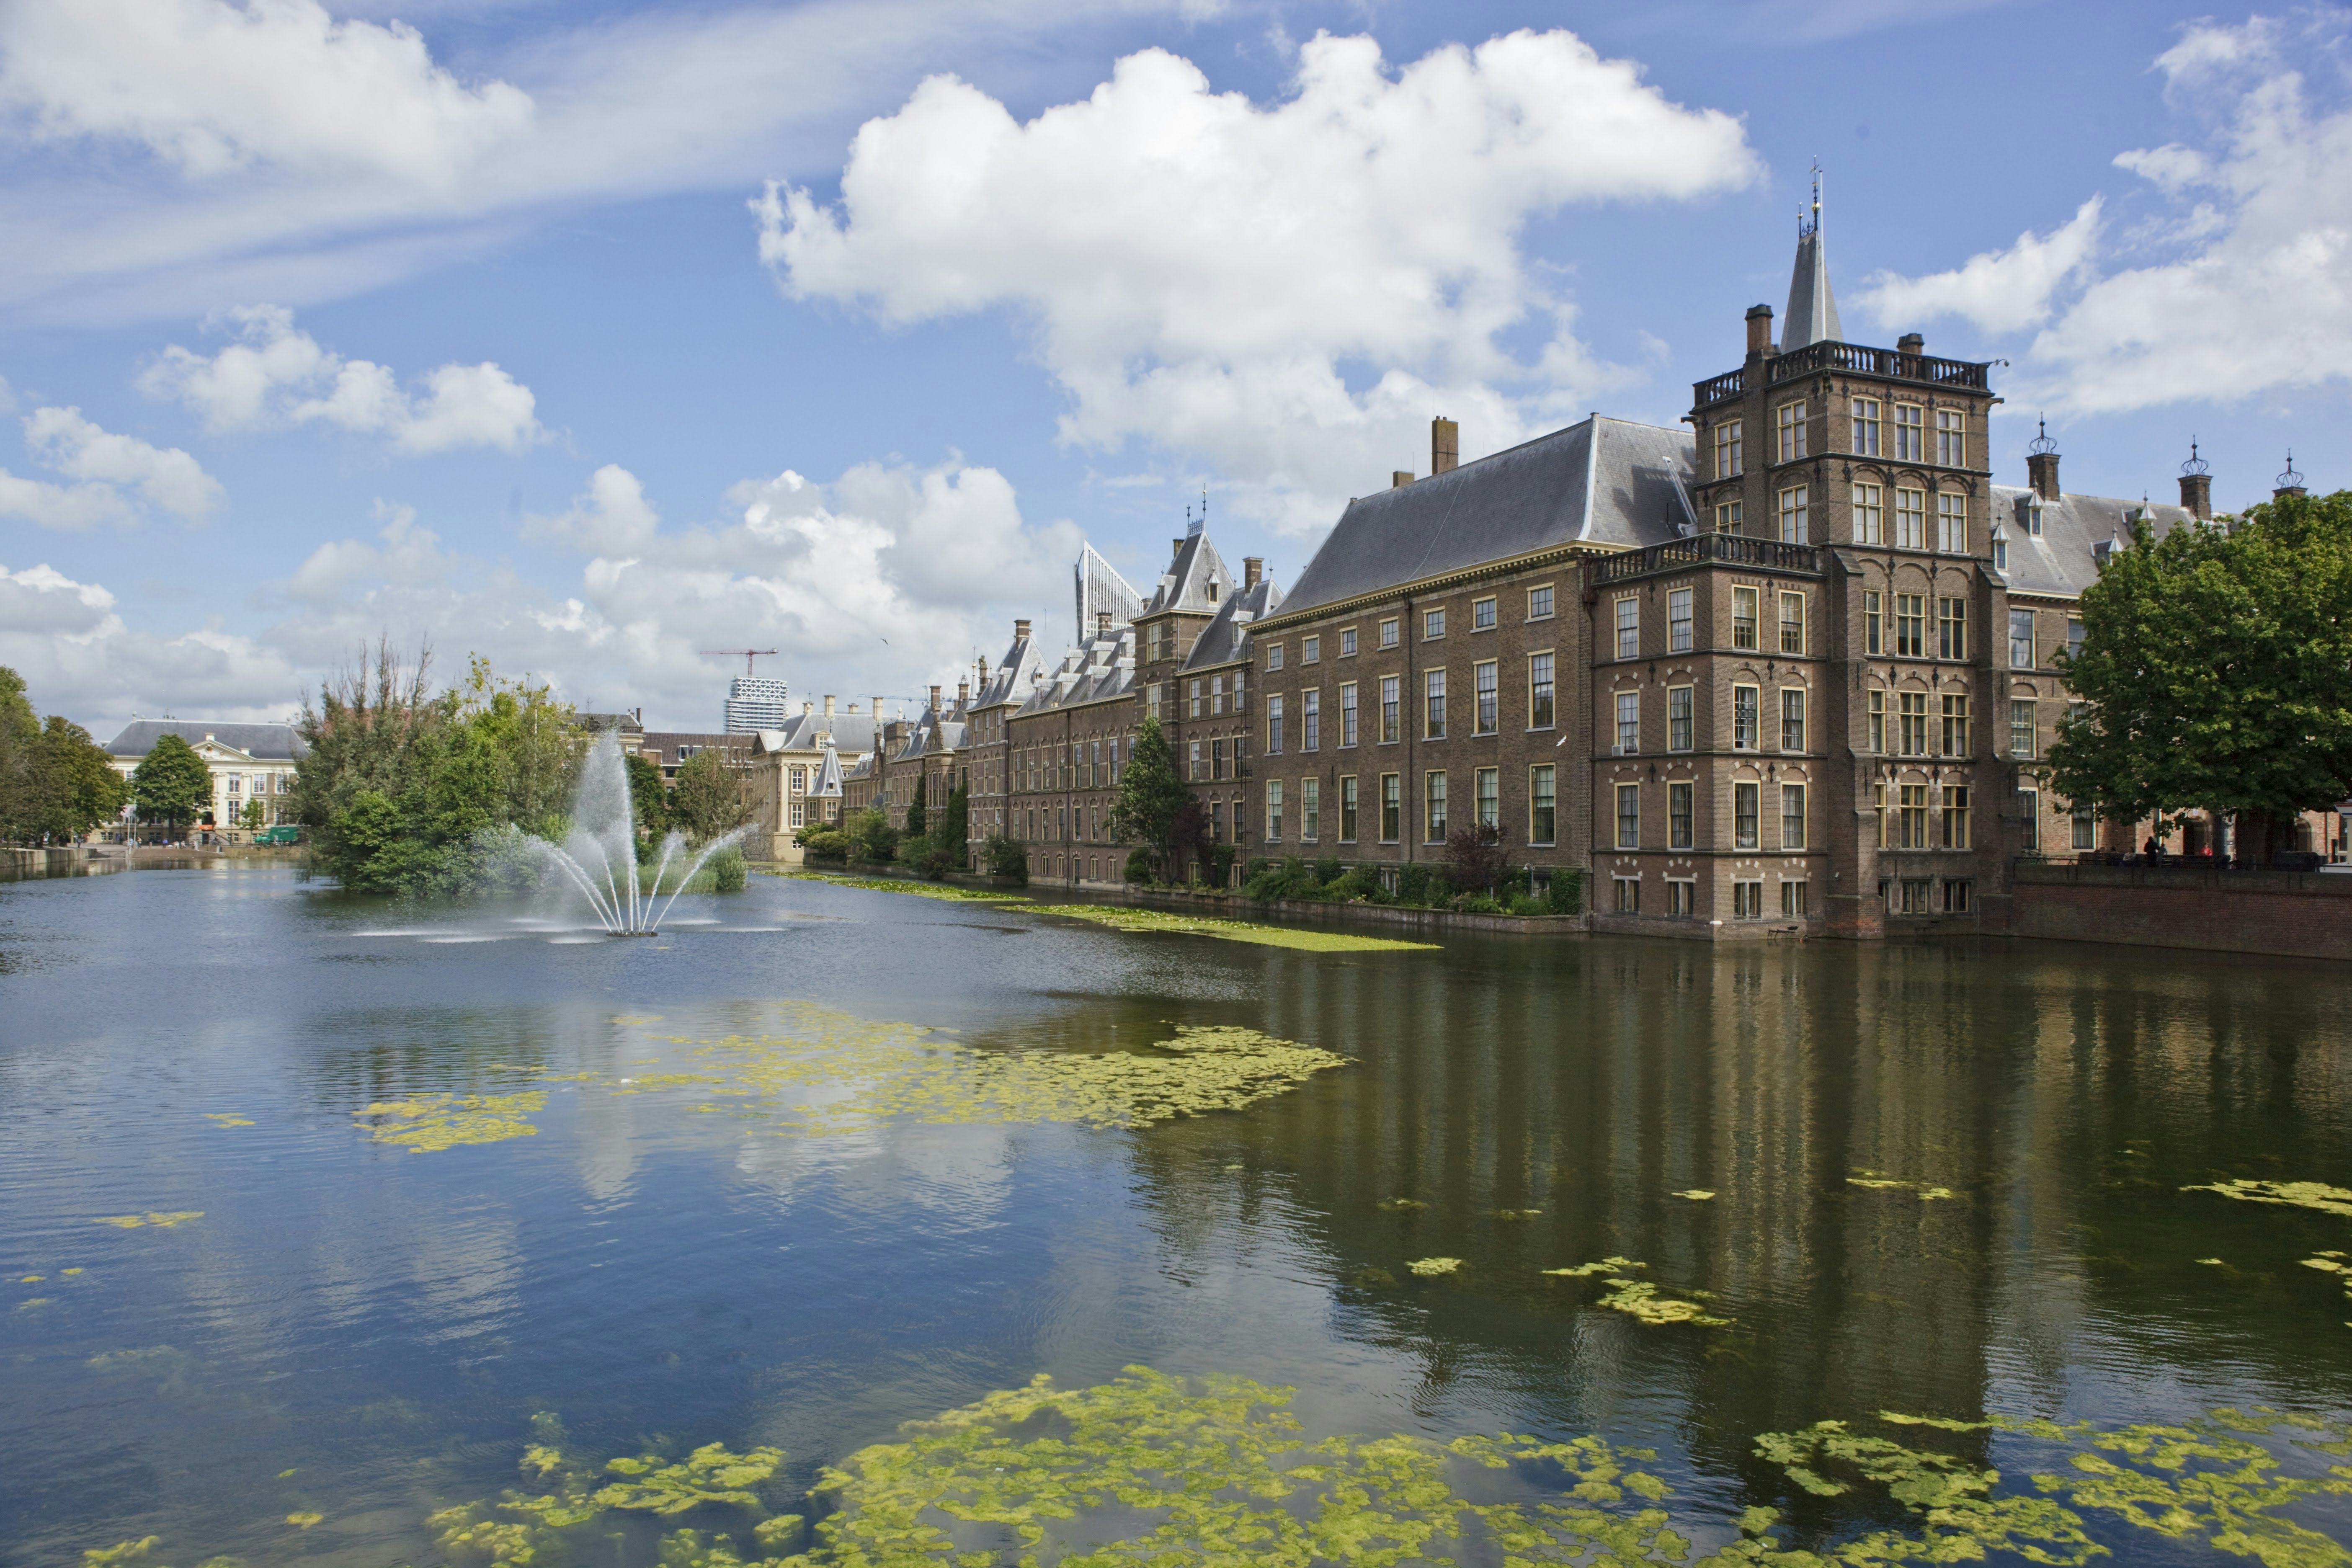 Kamer mort over schimmigheid rond extra kosten Binnenhof-renovatie